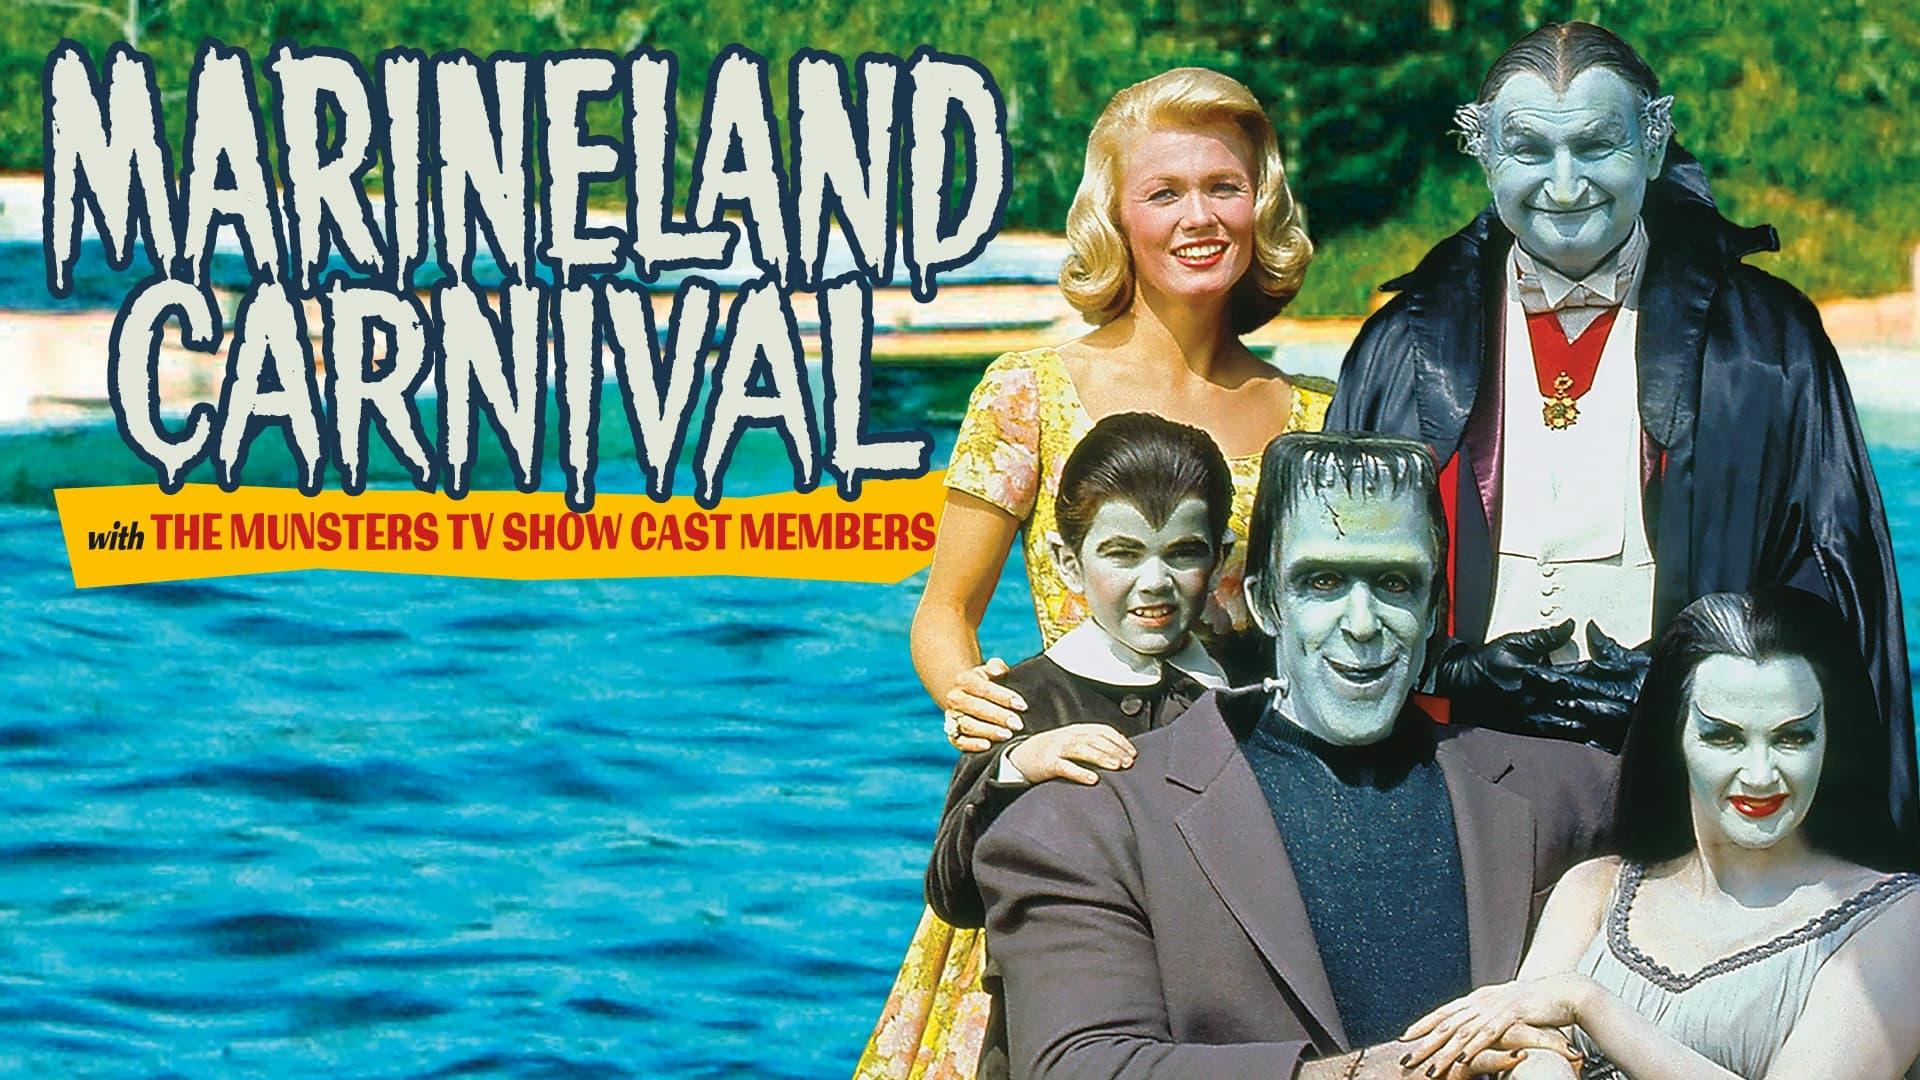 Marineland Carnival: The Munsters Visit Marineland backdrop